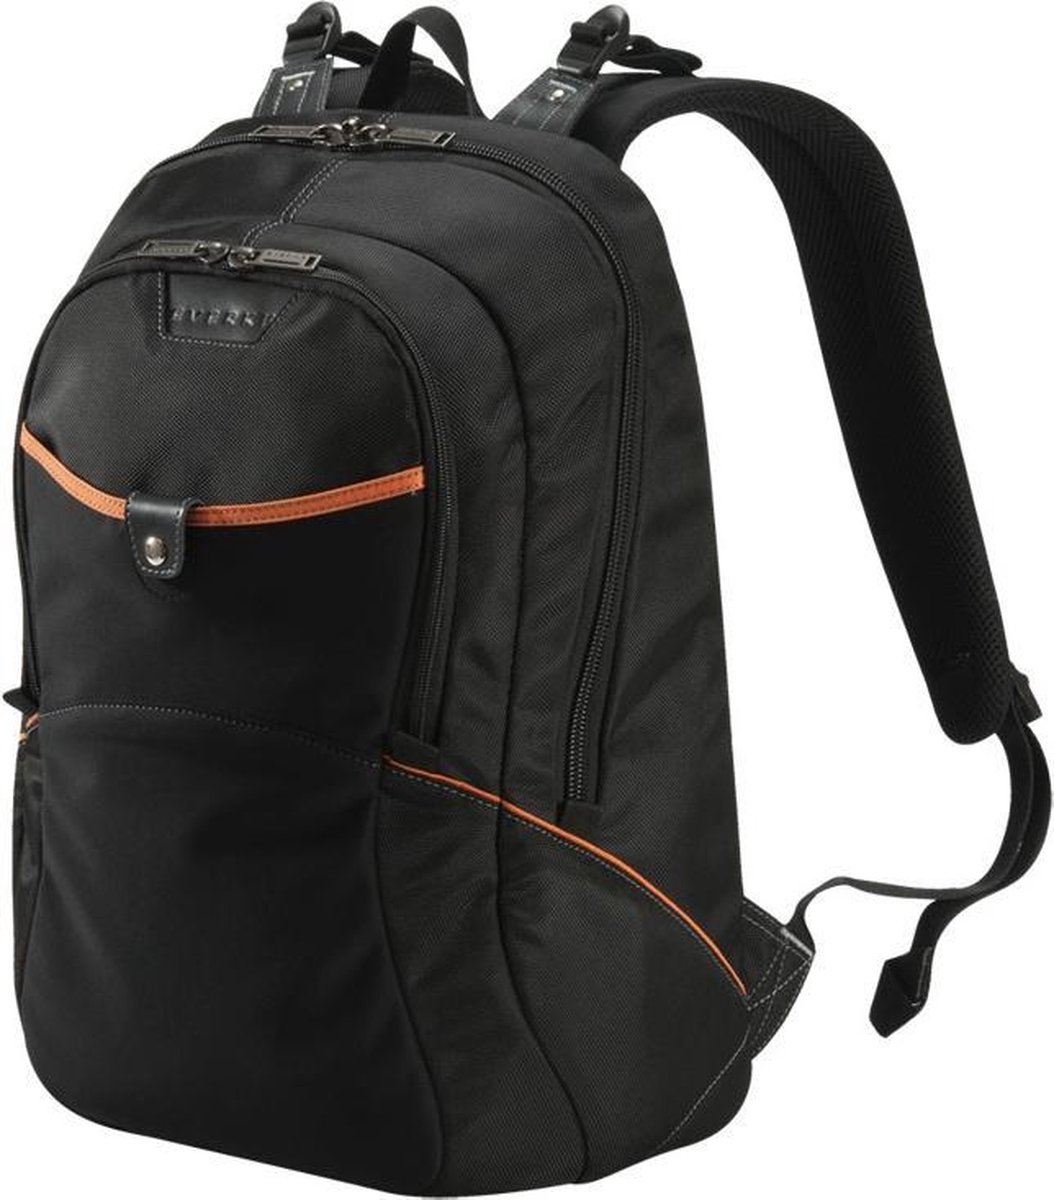 Everki Glide Laptop Backpack 17.3 Black